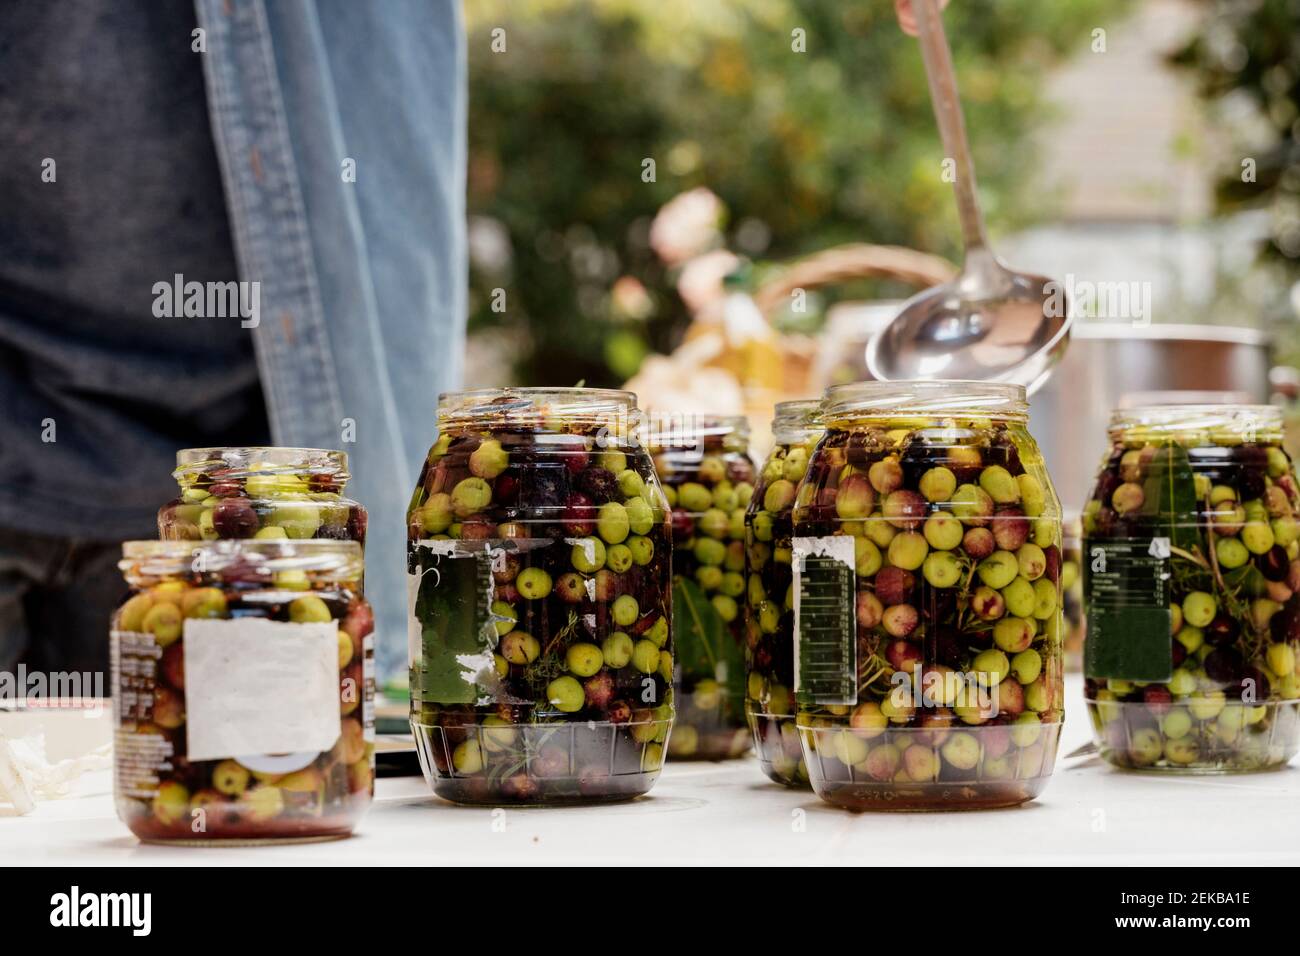 Man preparing olives in jars Stock Photo